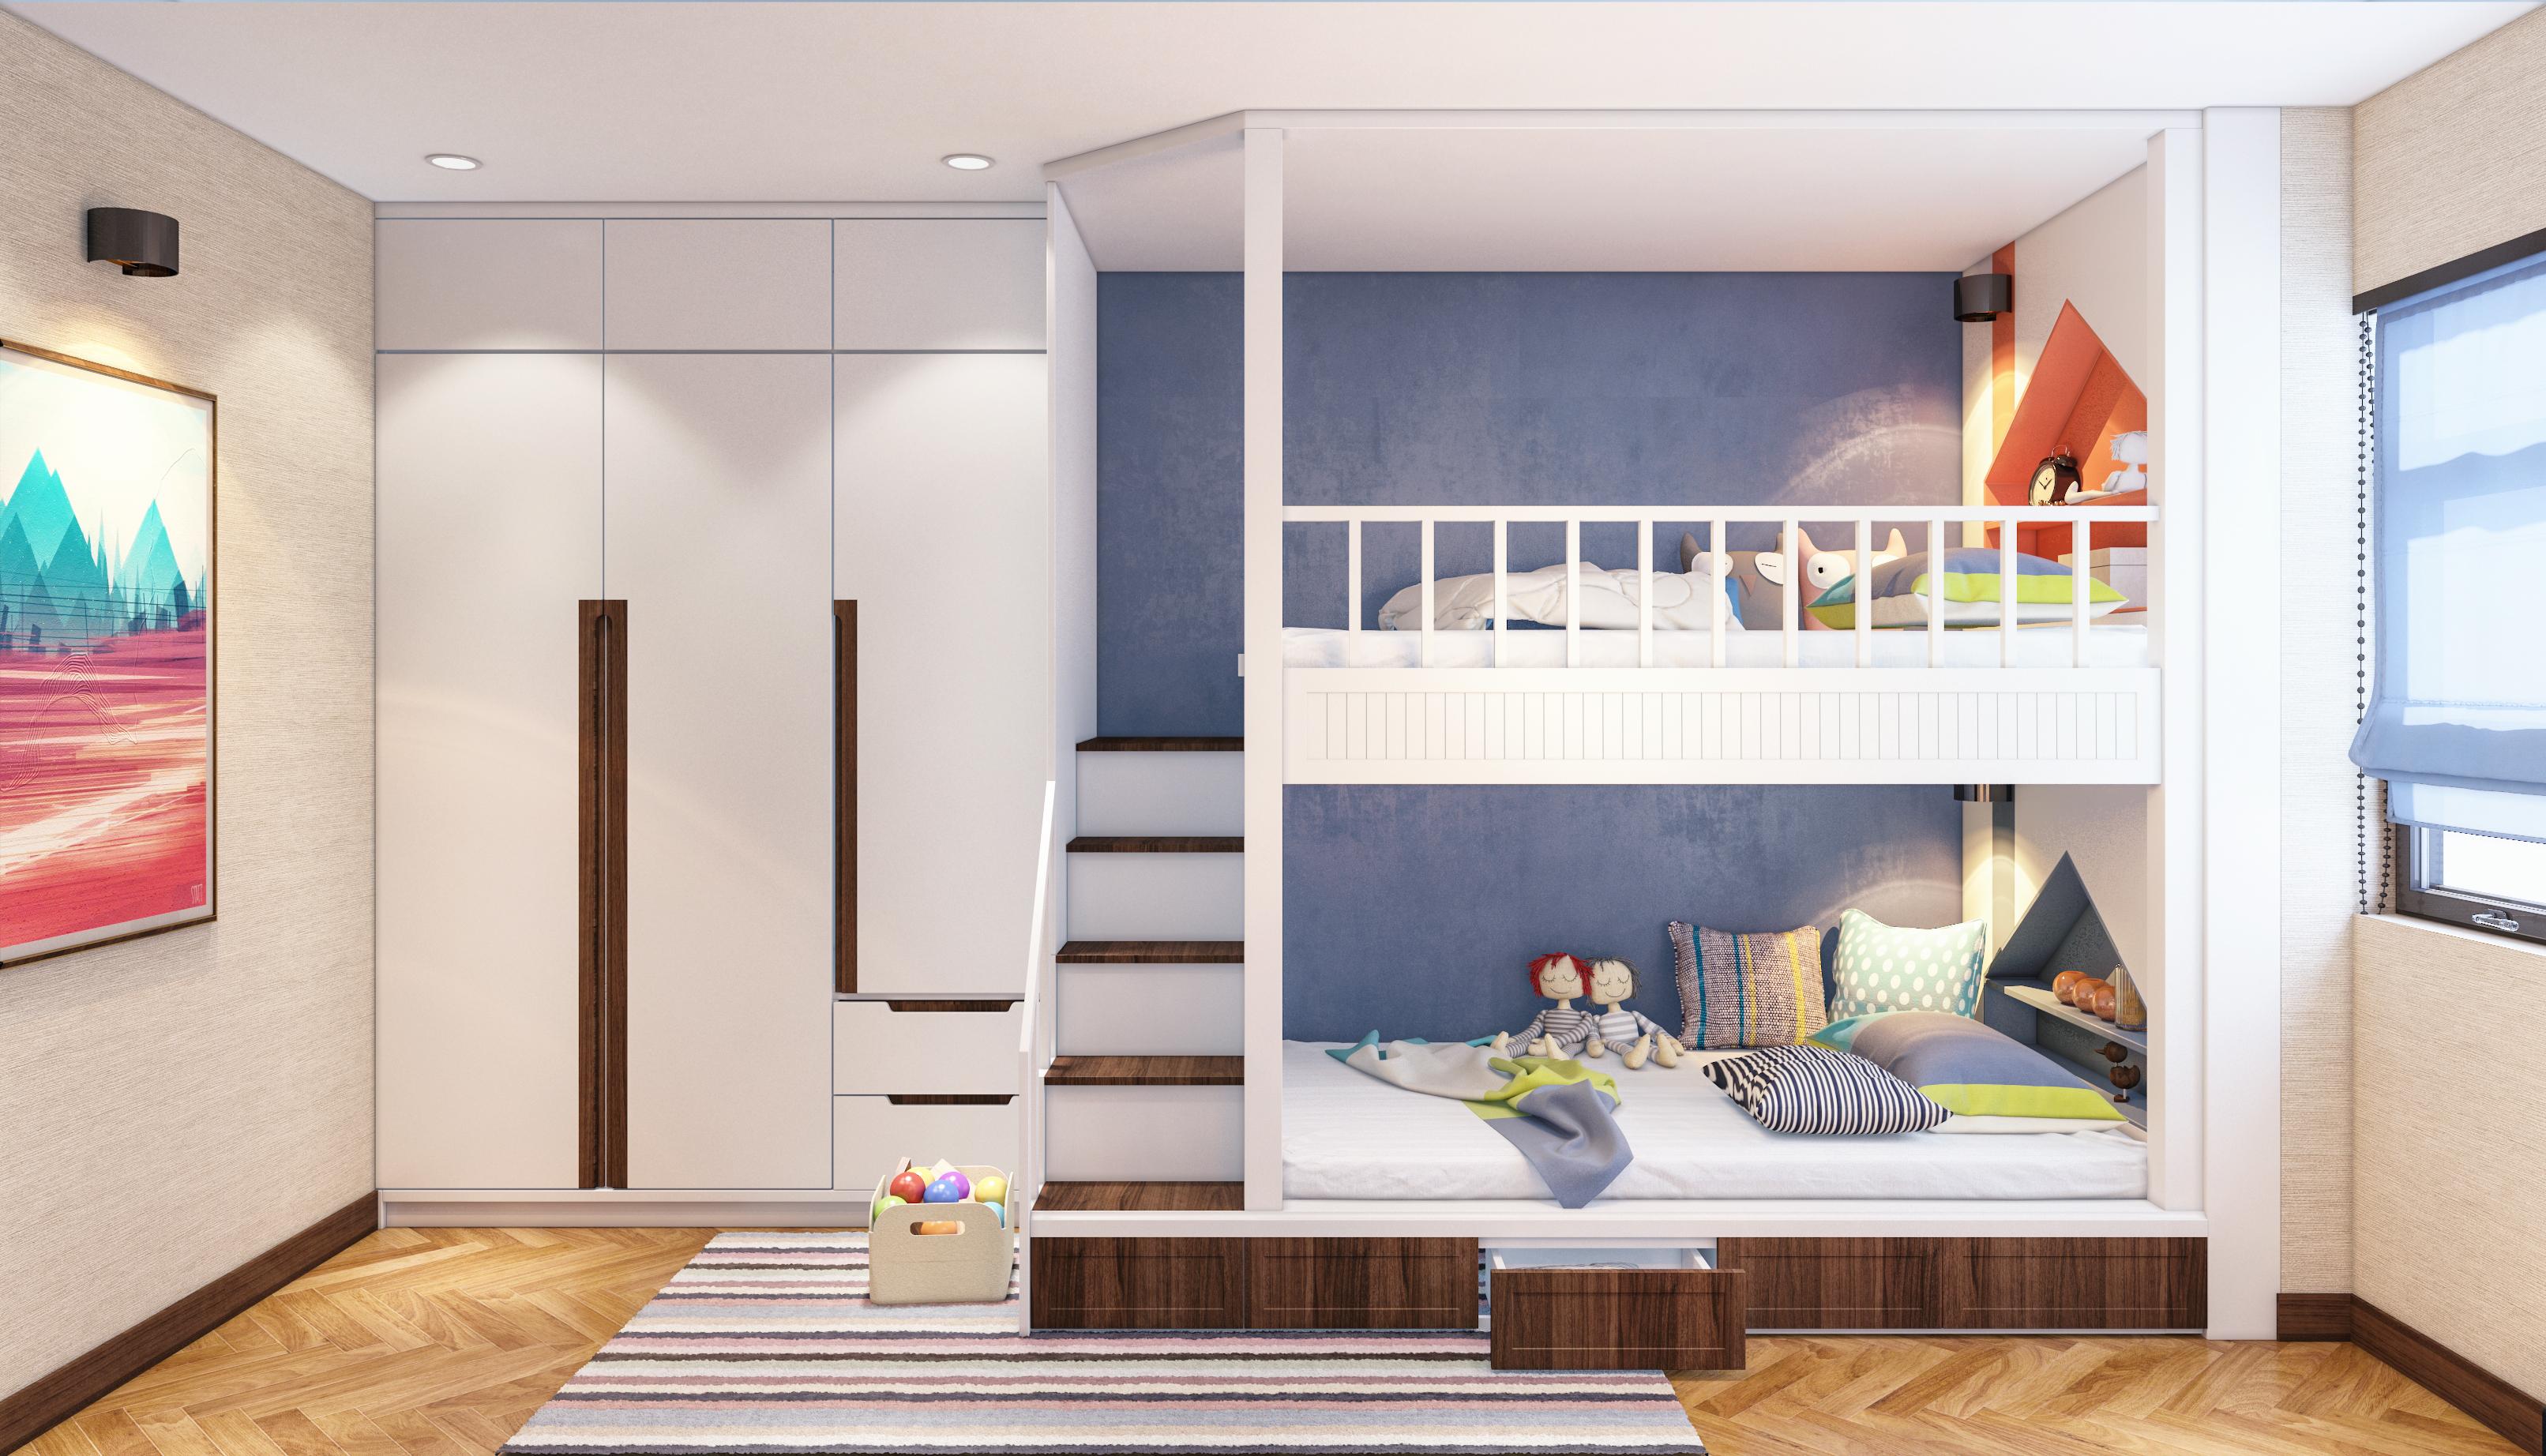 Thiết kế phòng ngủ cho bé cũng như thiết kế phòng ngủ trẻ em ngày nay thực sự đẹp mắt và thu hút. Với các lựa chọn gỗ tự nhiên, màu sắc tươi tắn và các chi tiết mỹ thuật độc đáo, phòng ngủ của bé sẽ trở nên ấm cúng và thoải mái. Hãy xem hình ảnh để tìm cảm hứng cho thiết kế phòng ngủ của bé nhé!